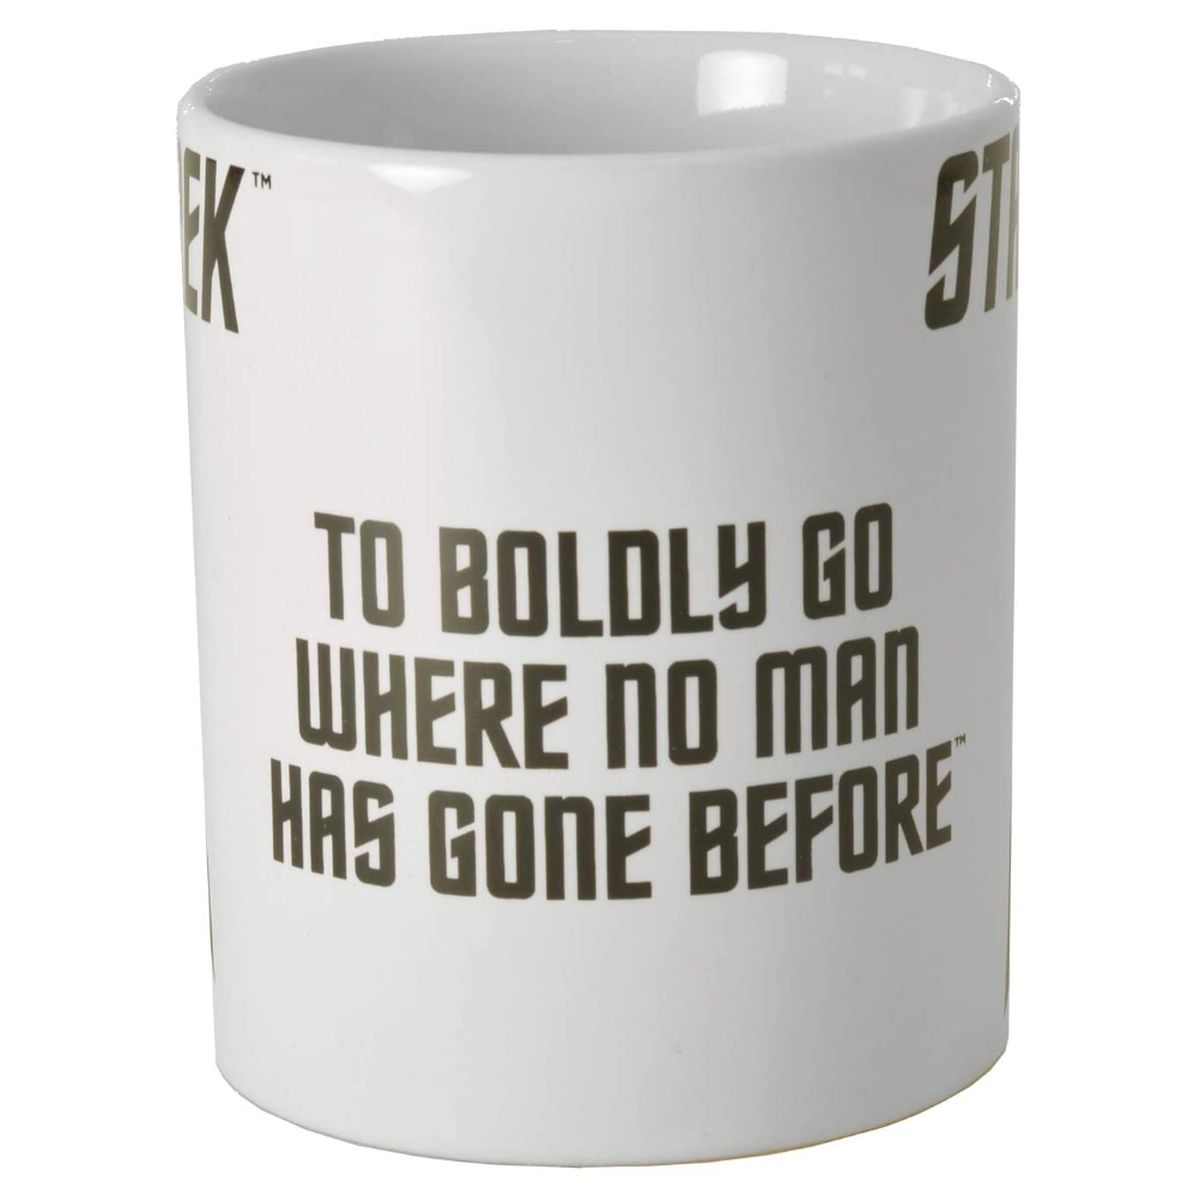 Star Trek mug - To Boldly go where no man has gone before